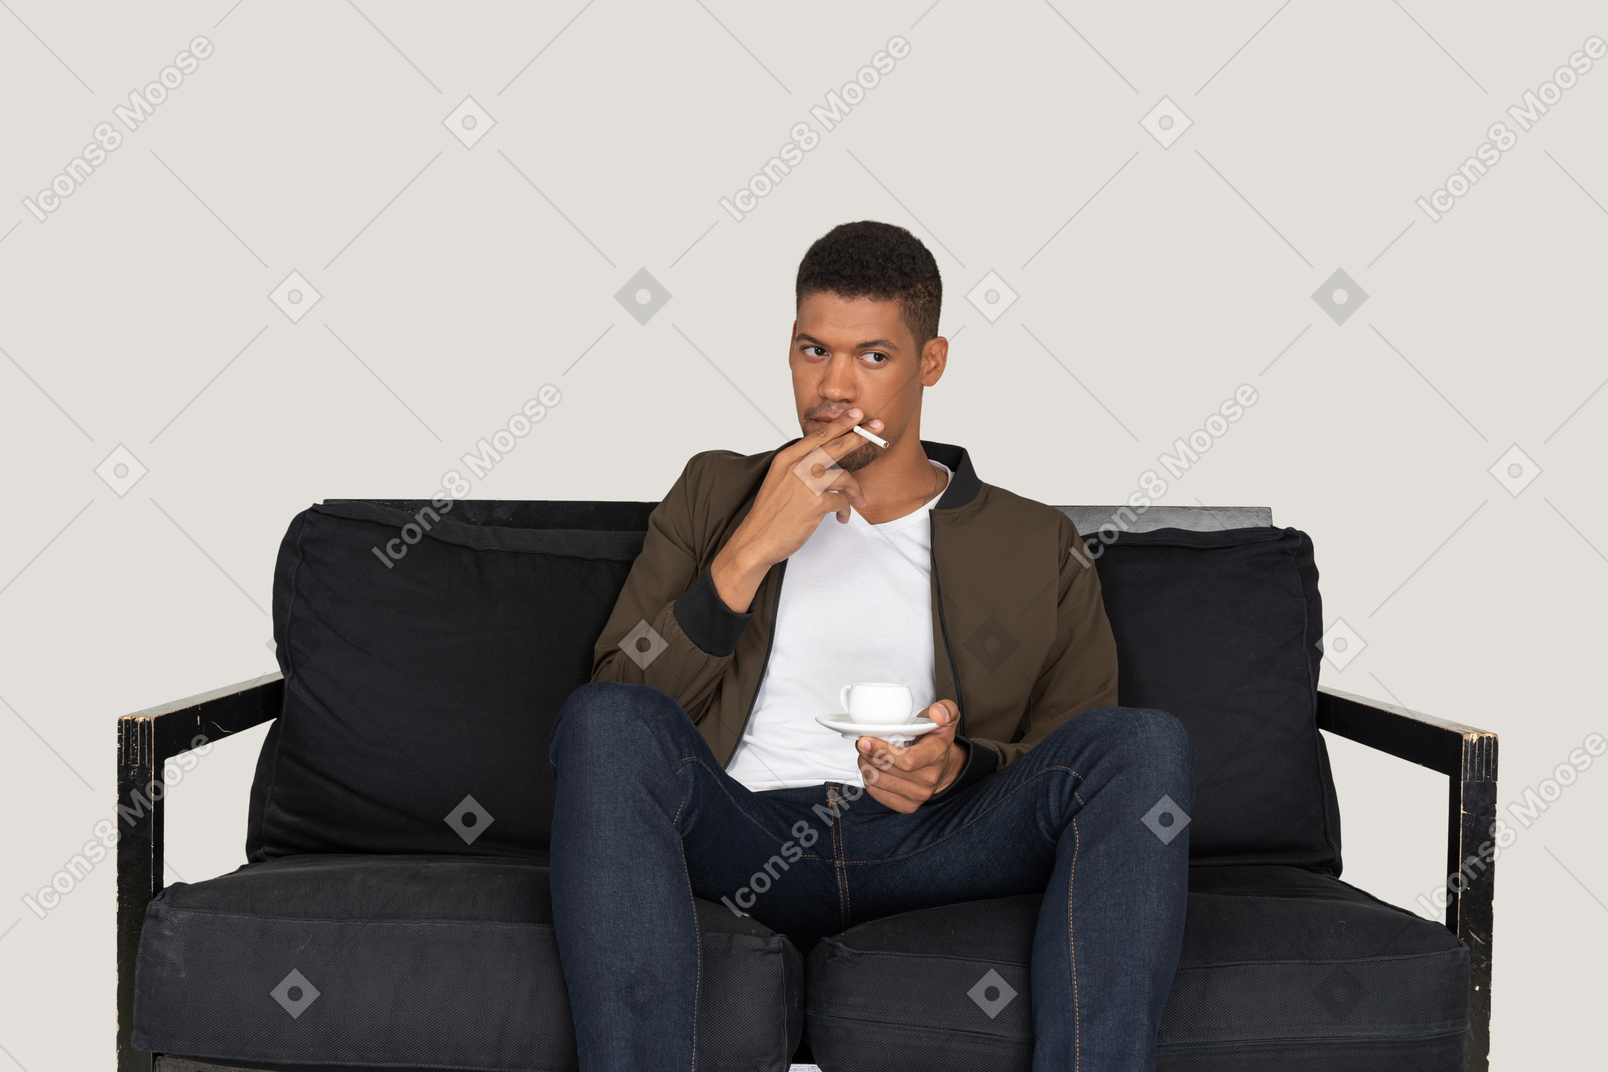 소파에 앉아 담배와 커피 한 잔을 들고 젊은 남자의 전면보기